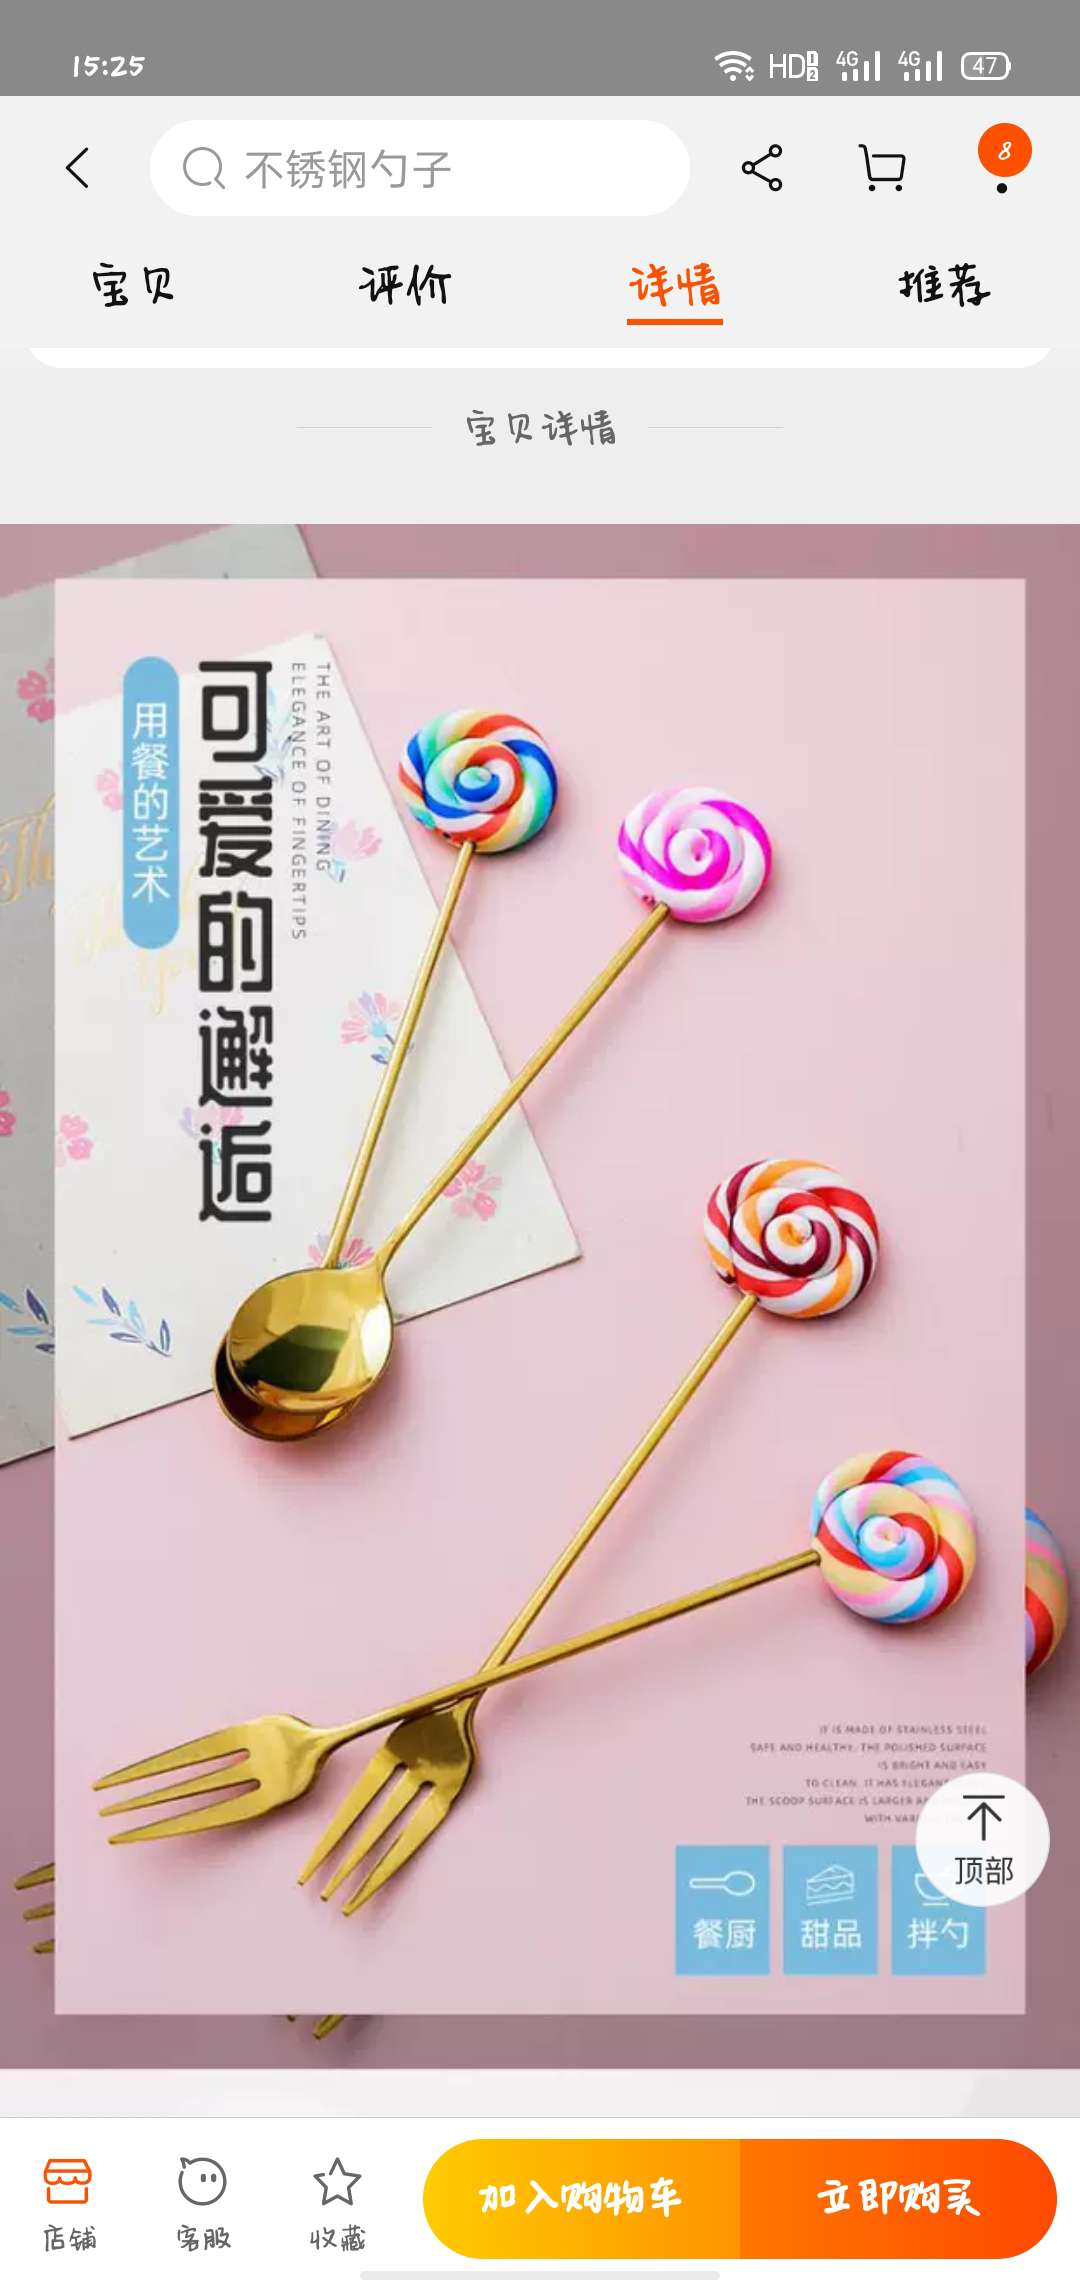 摔不坏的棒棒糖不锈钢搅拌勺子韩式可爱创意水果叉冰淇淋勺汤勺创意棒棒糖钛金勺叉详情图3